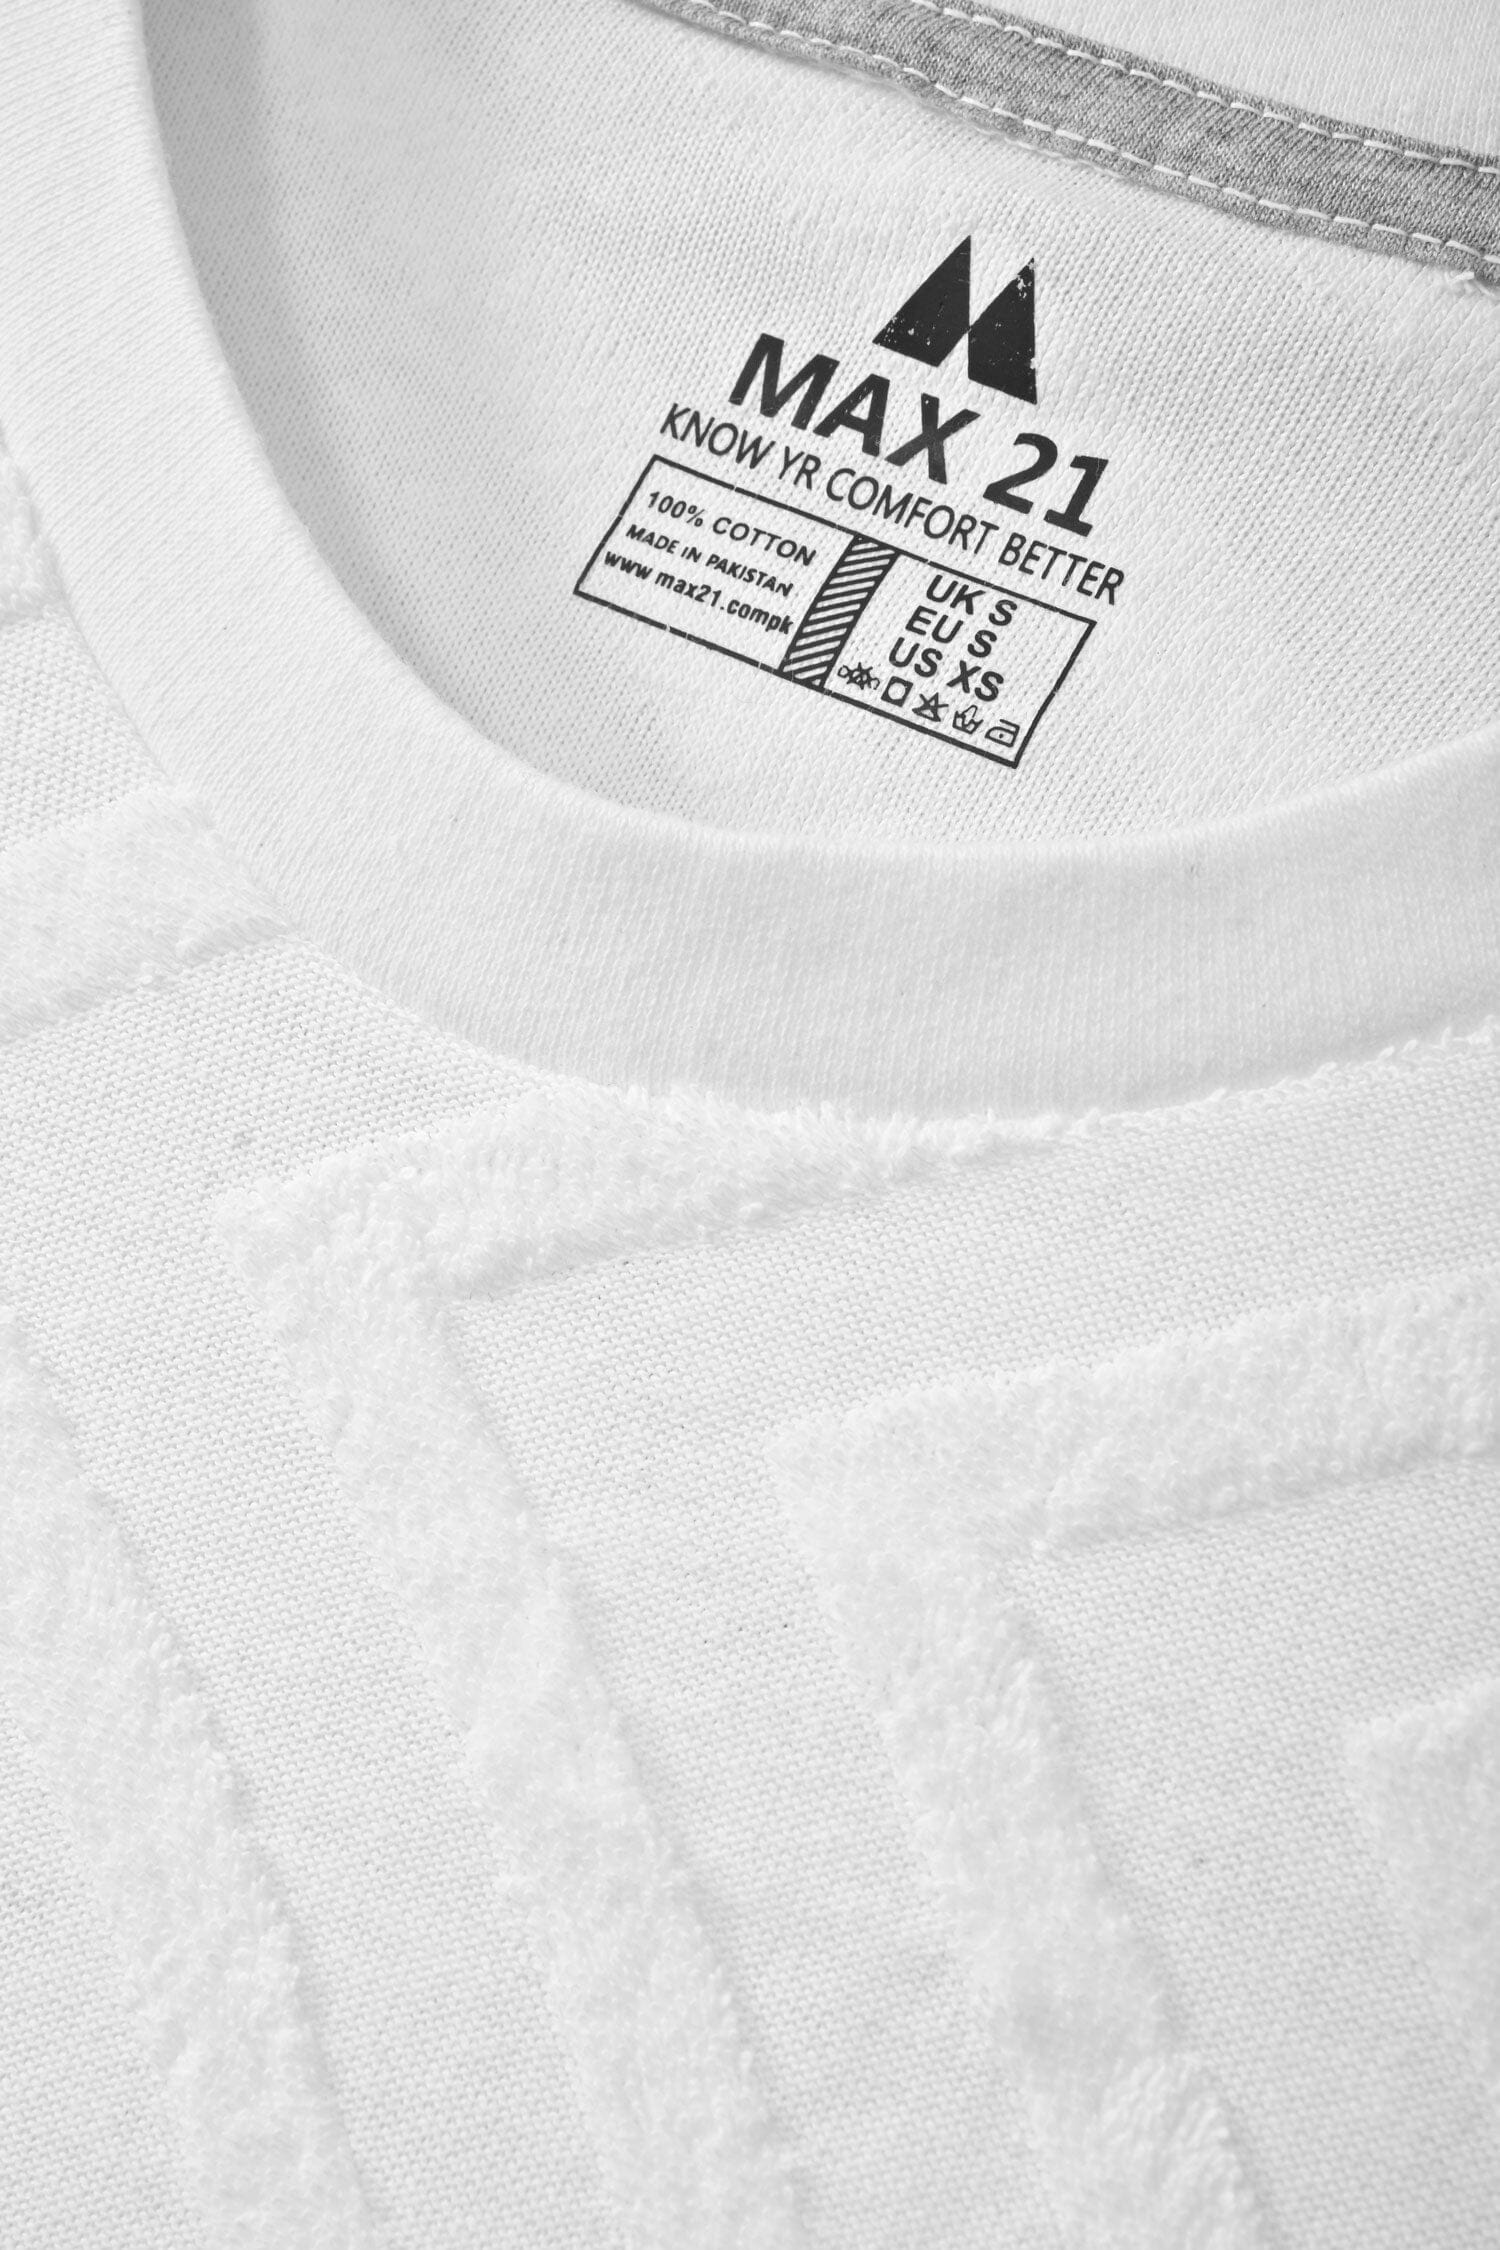 Max 21 Women's Short Sleeve Tee Shirt Women's Tee Shirt SZK 